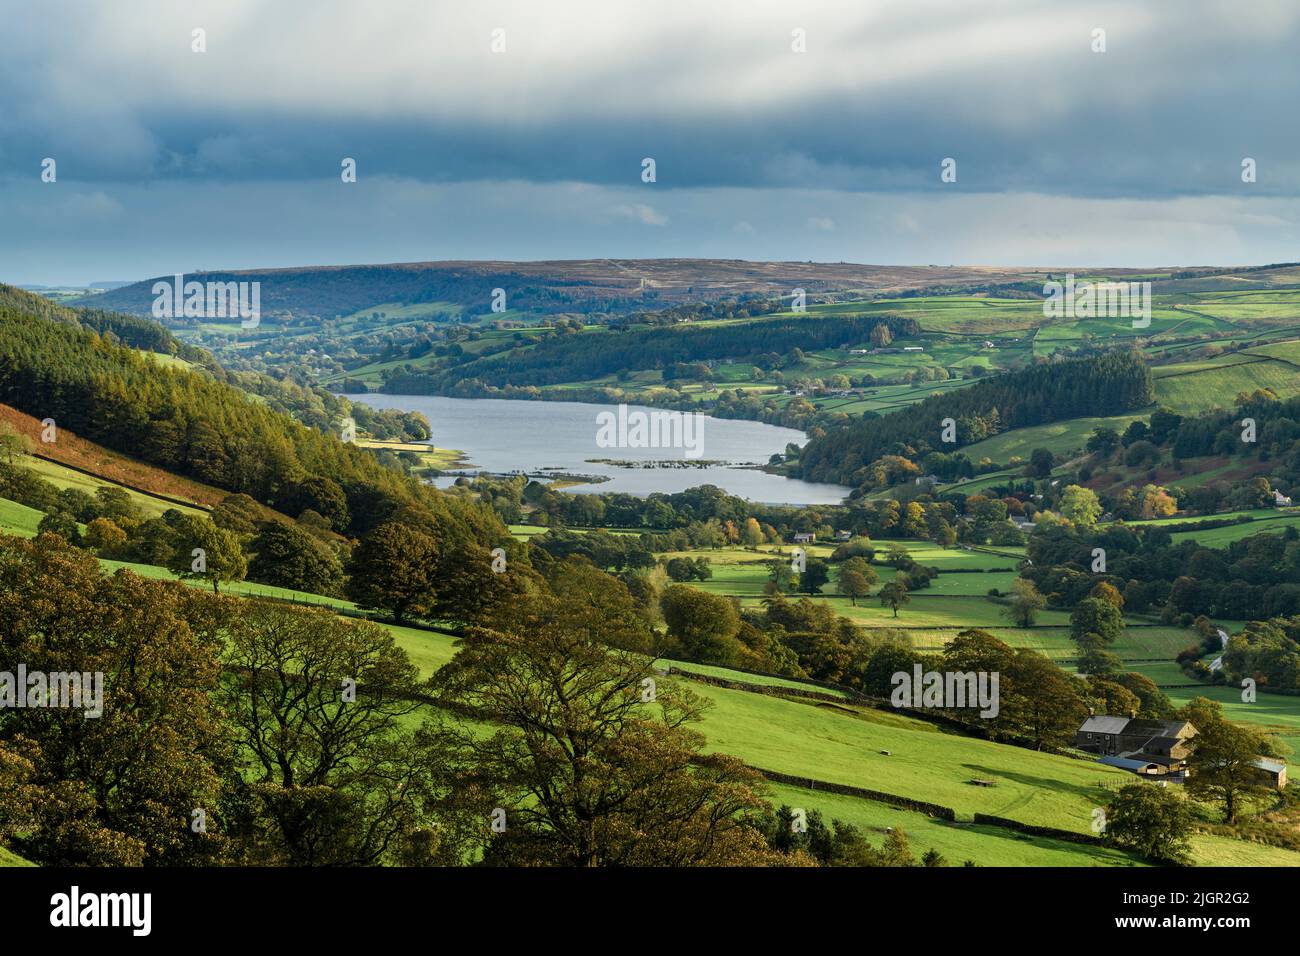 Paesaggio rurale paesaggistico Yorkshire Dales protetto (bellissimo paesaggio pastorale, alberi su colline, muri a secco) - Upper Nidderdale, Inghilterra, Regno Unito. Foto Stock